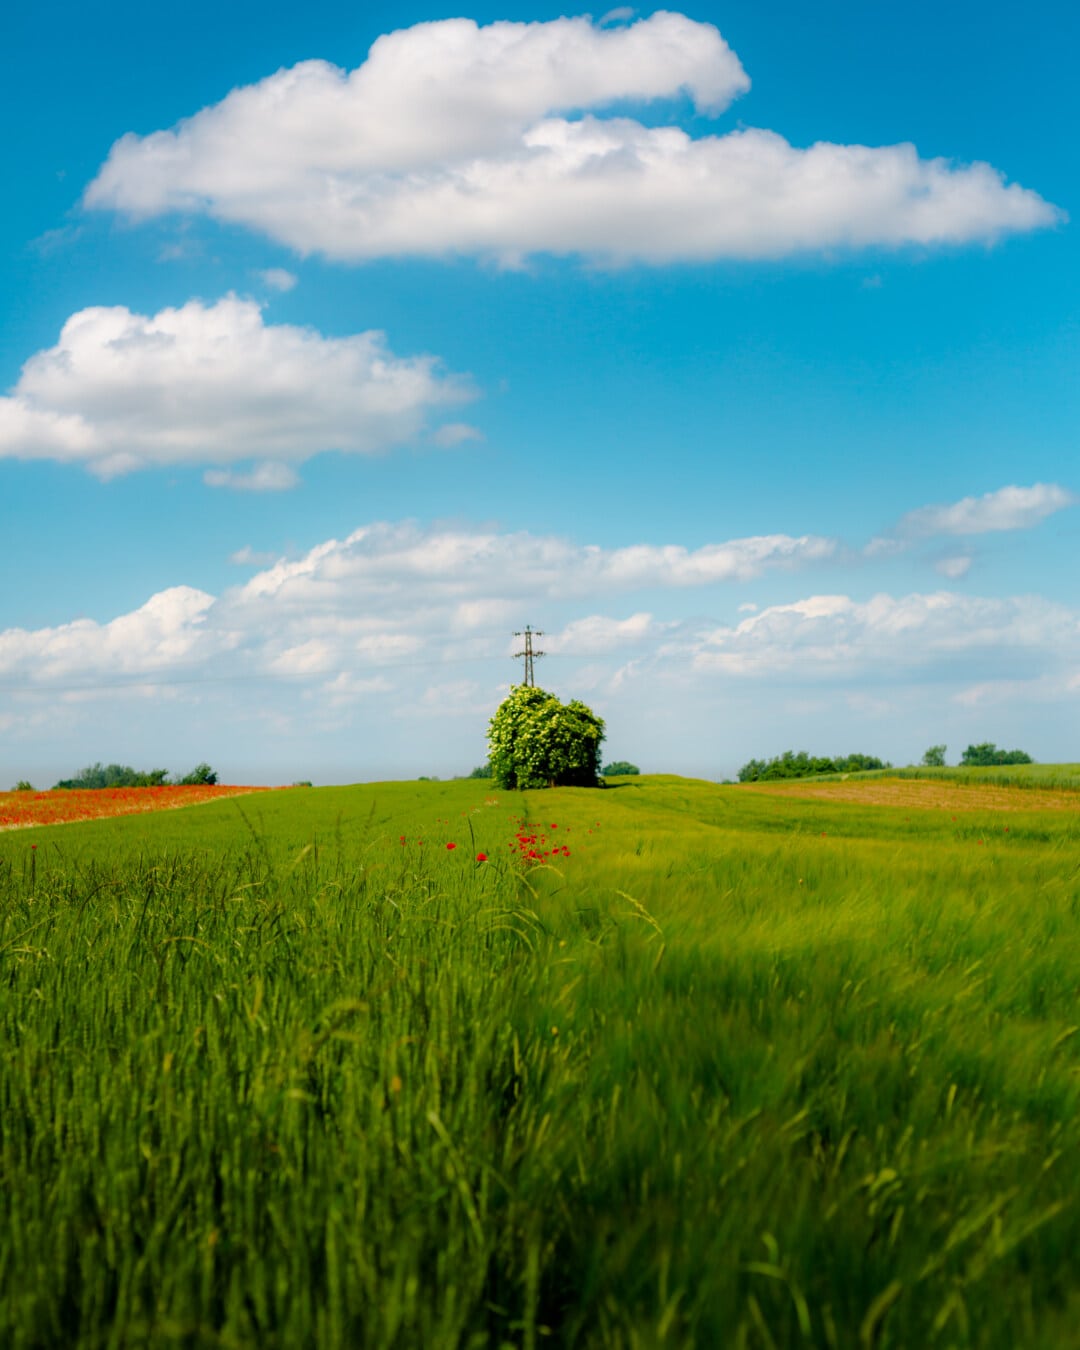 wheatfield, idyllic, perspective, rye, rural, meadow, field, cereal, landscape, wheat